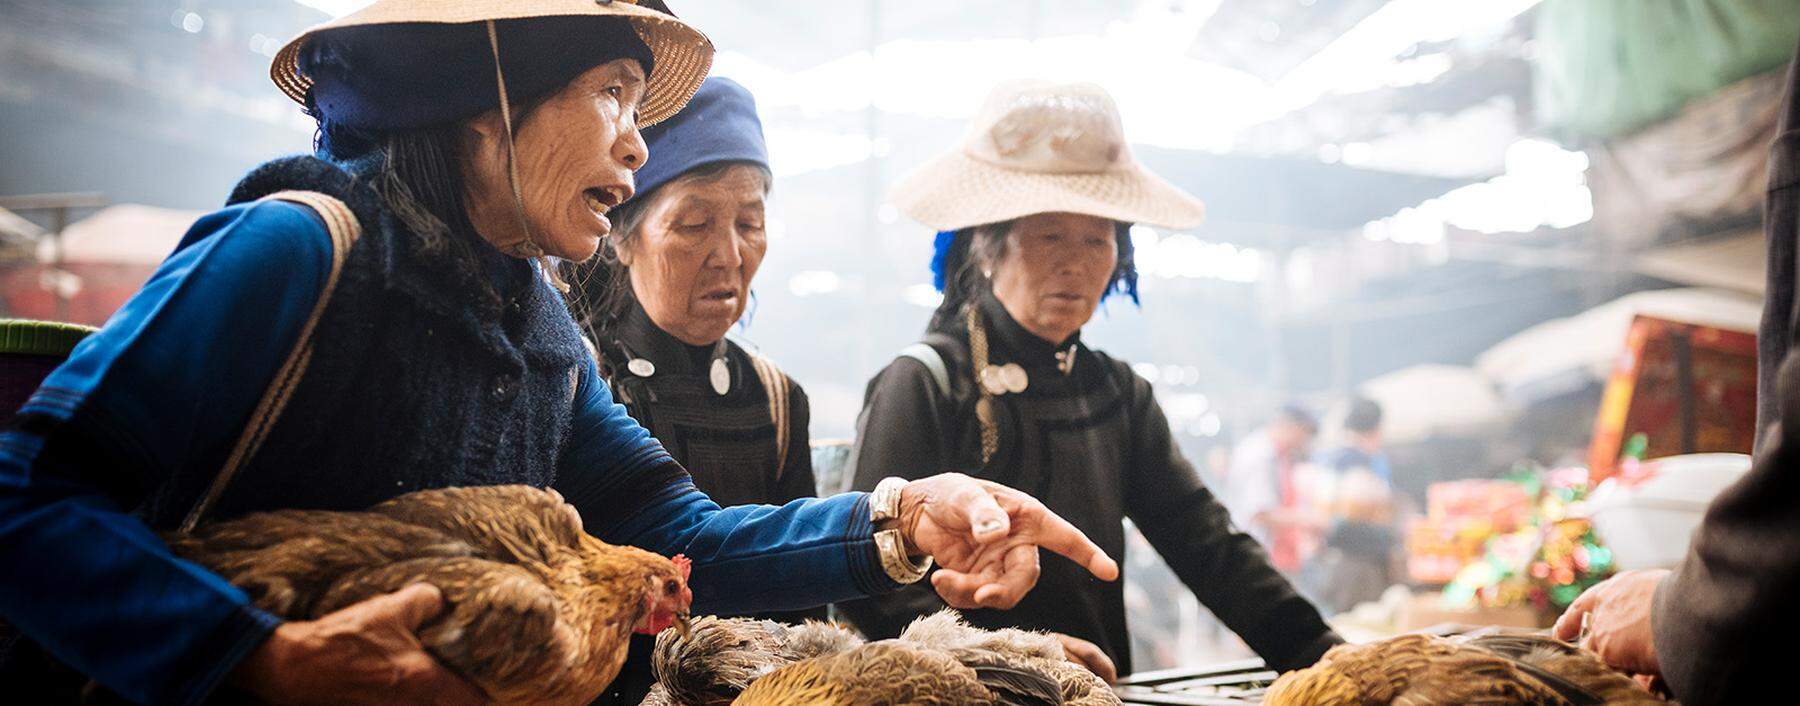 Markt in China: Nicht nur Hühner werden gehandelt, sondern auch Wildtiere wie Zibetkatzen und Schuppentiere.